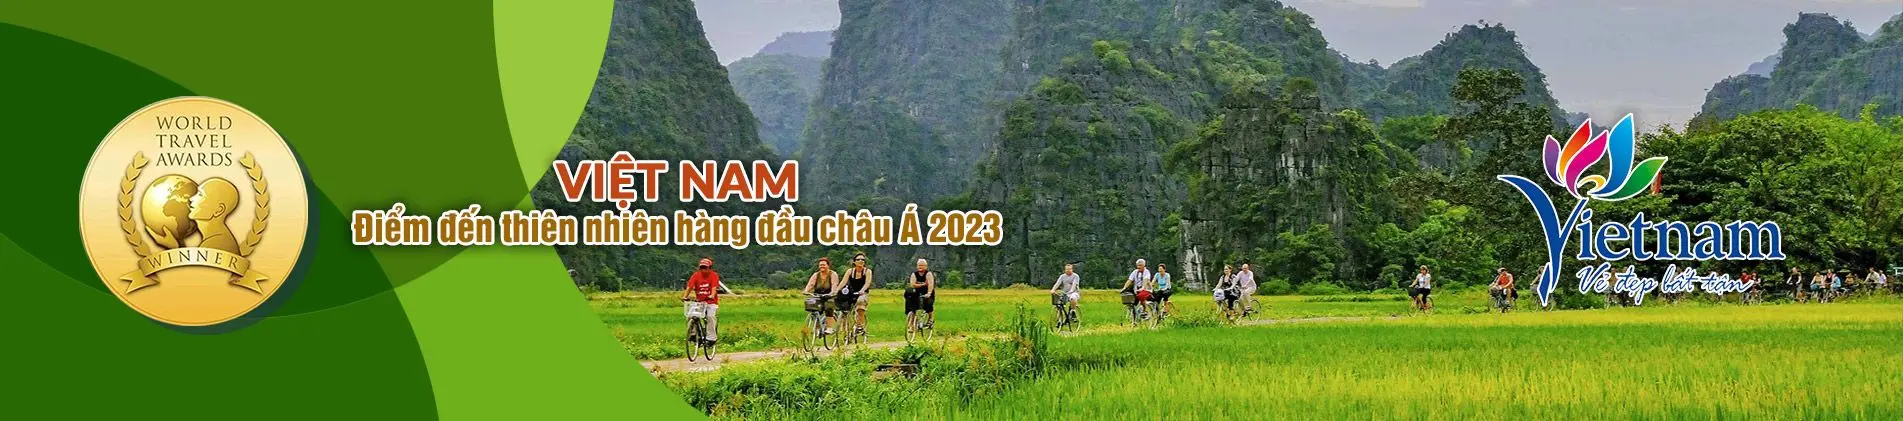 Top 10 Việt Nam 5